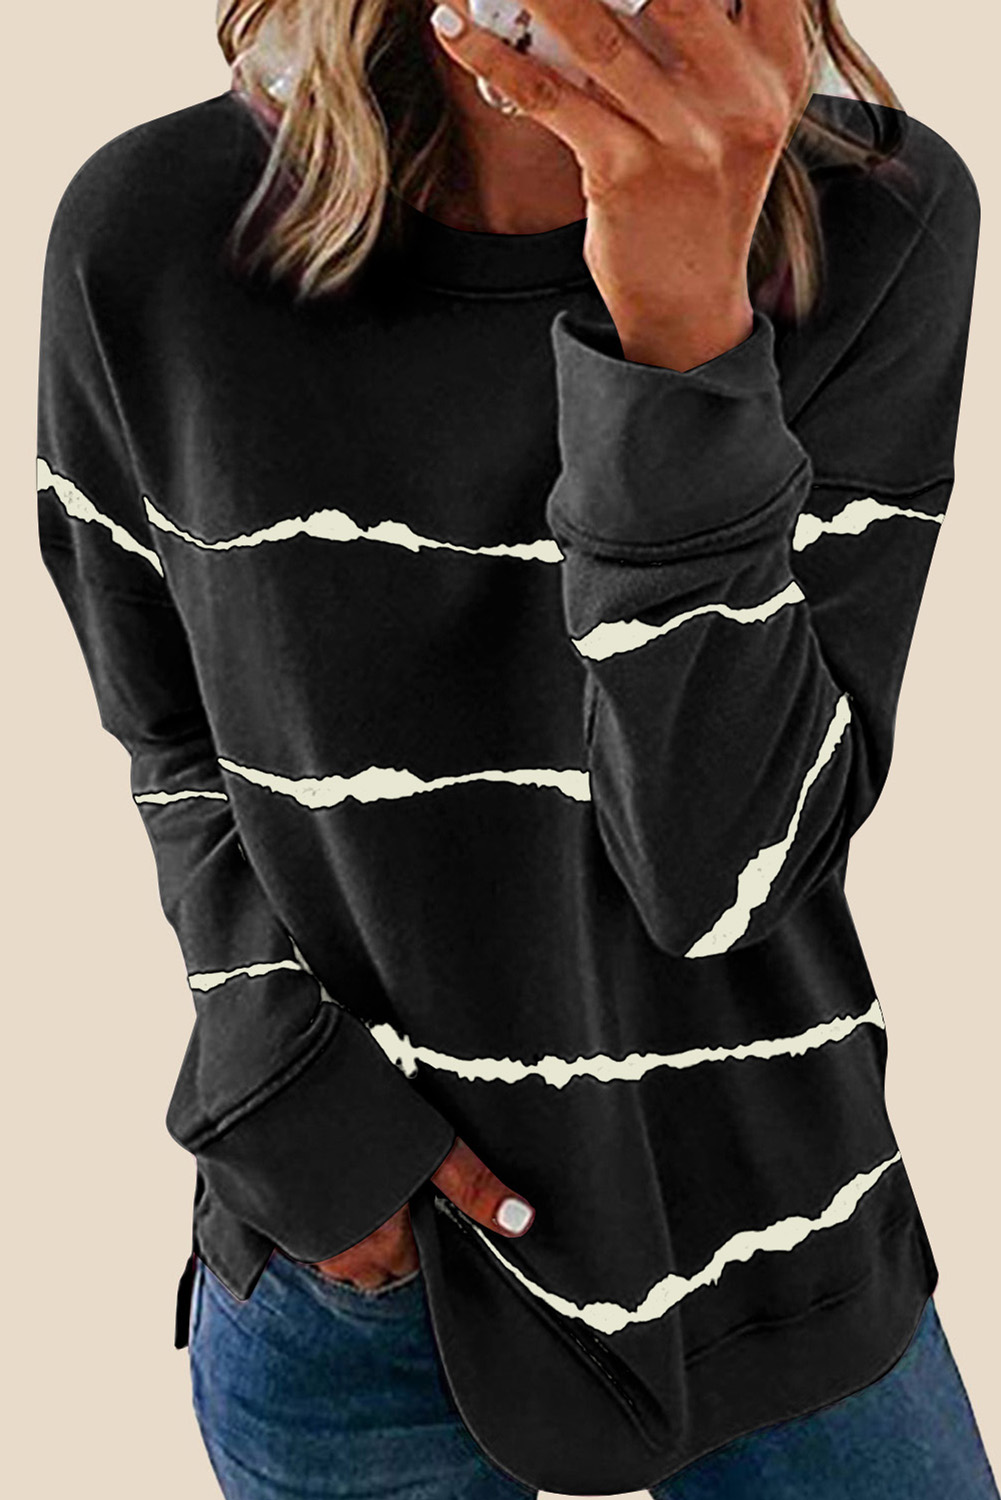 $ 15.5 - Tie-dye Stripes Black Sweatshirt - www.farysays.com